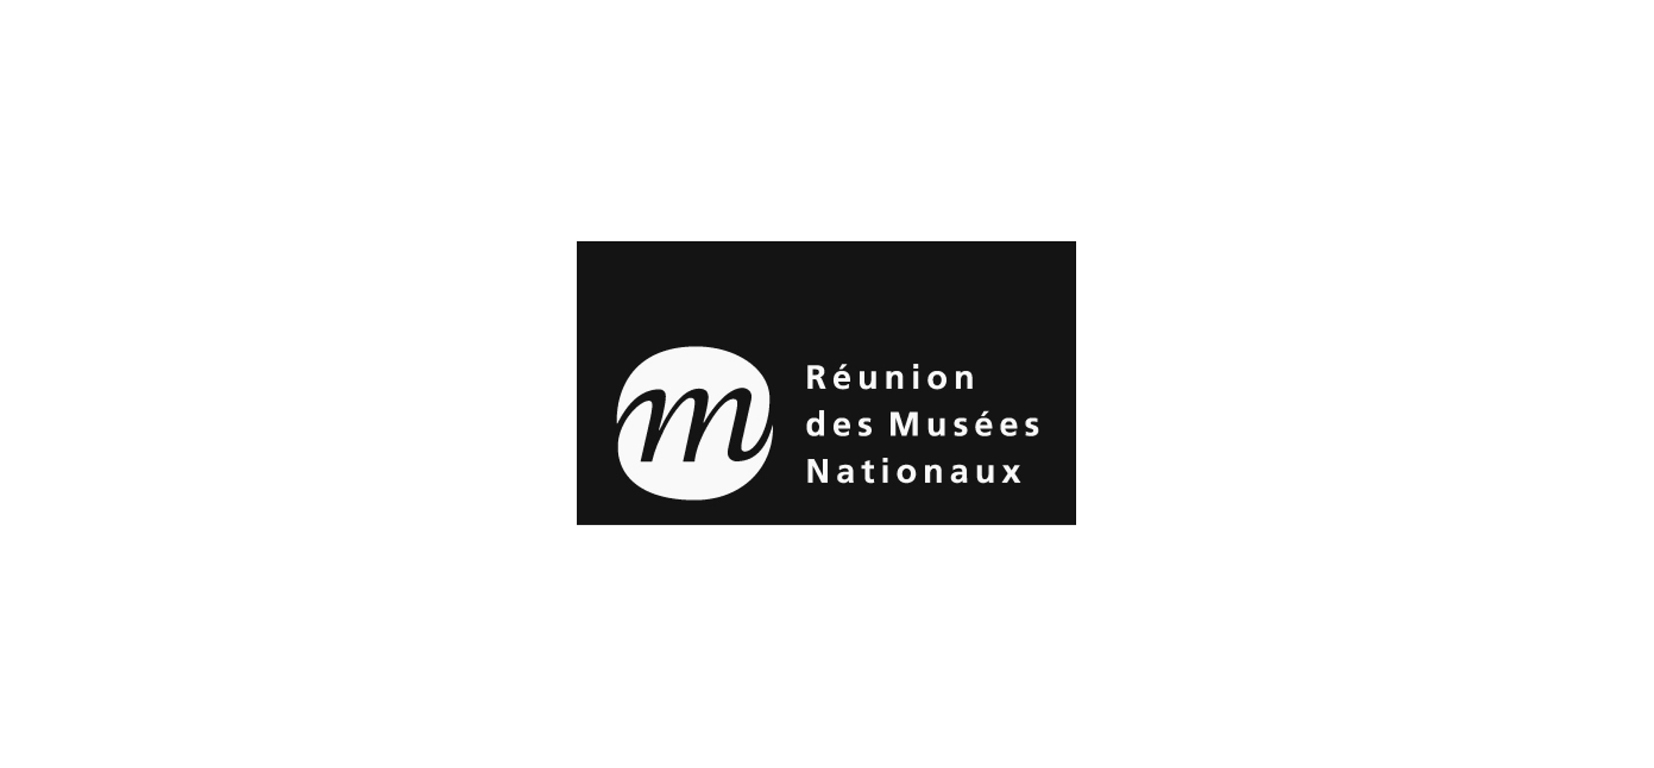 Réunion Musées Nationaux